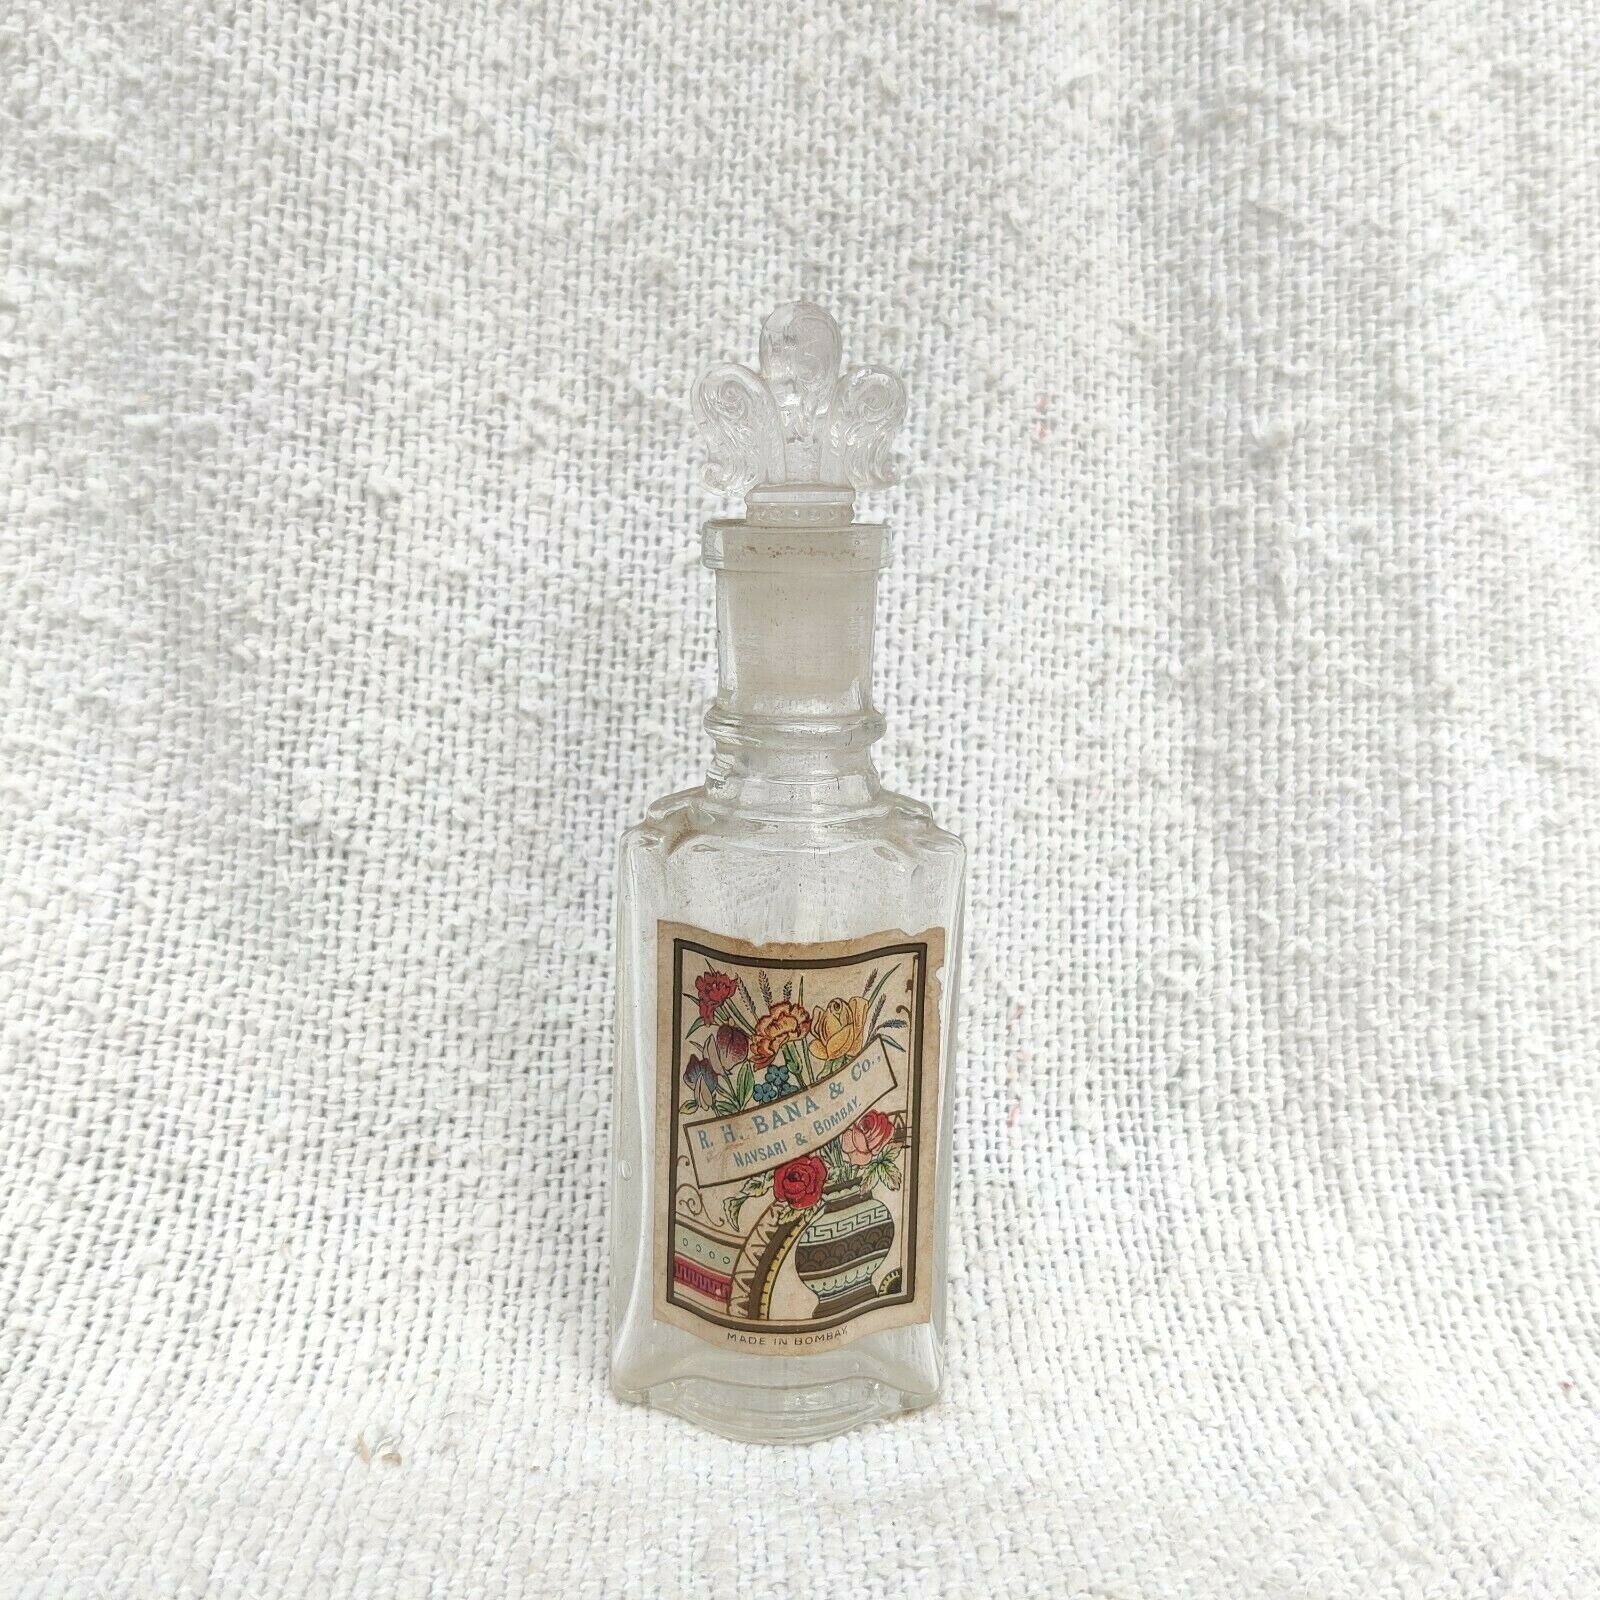 1940s Vintage R H Bana & Co Perfume Bottle Decorative Glass Crown Cap Rare G1023